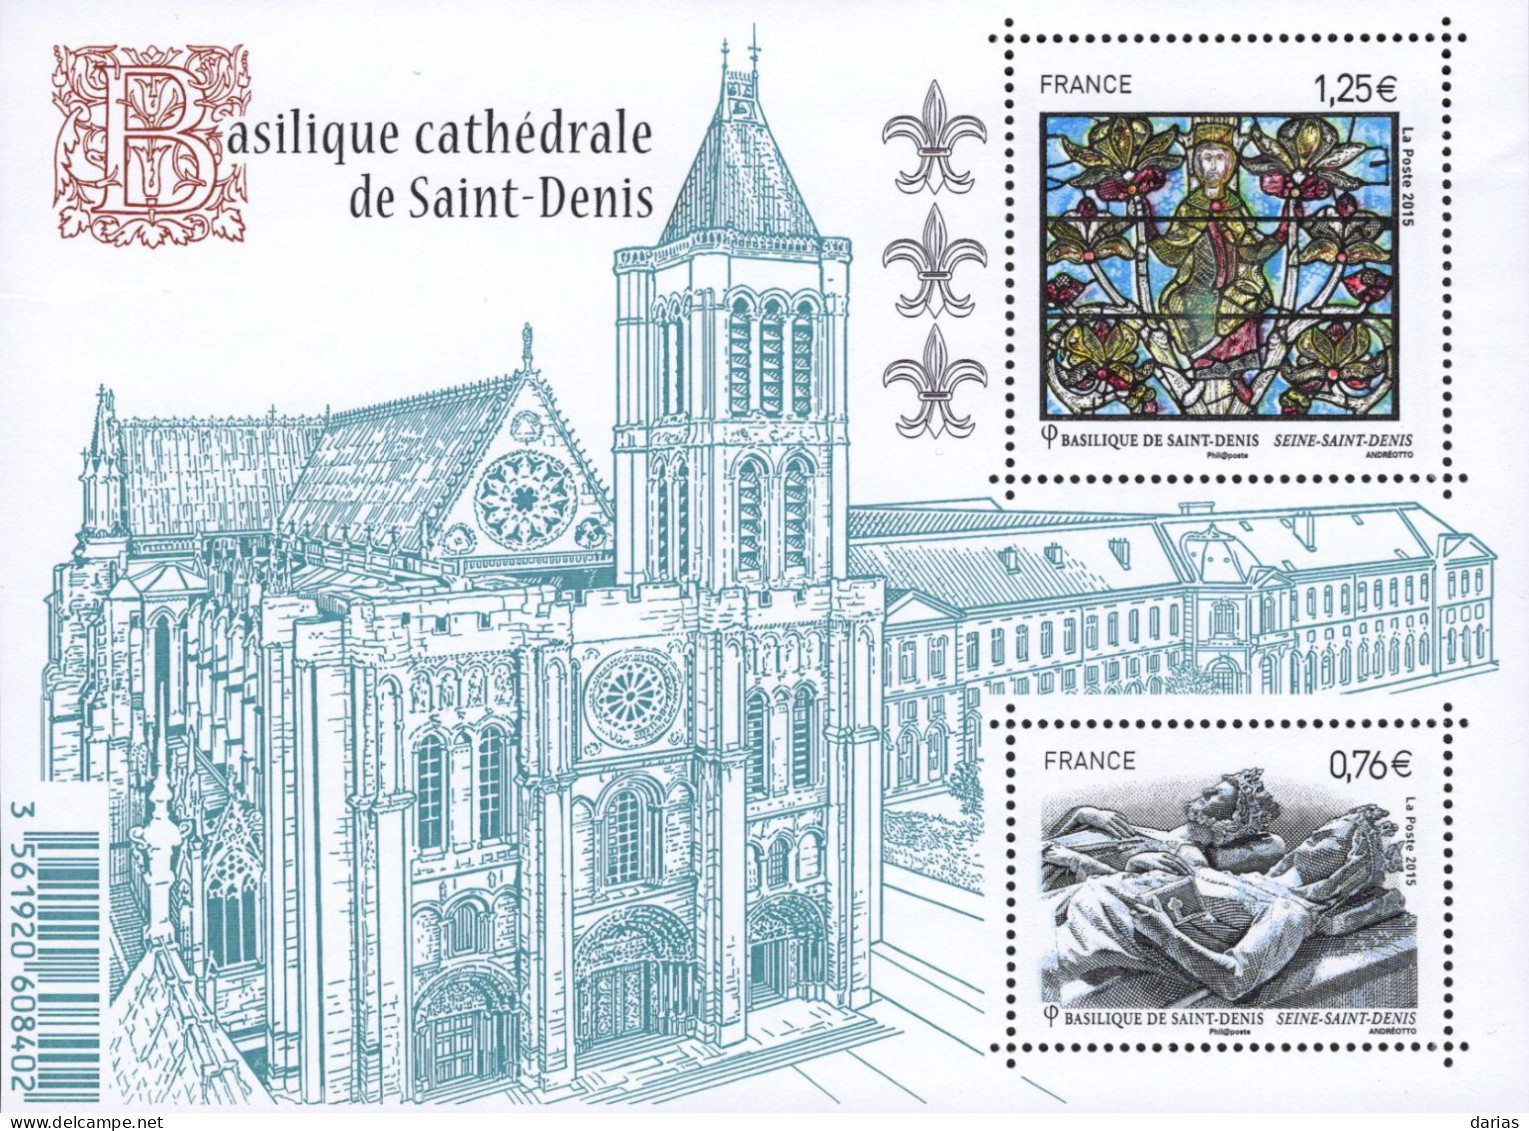 Le Feuillet F4930 "Basilique Cathédrale De Saint-Denis" Luxe Bas Prix, A SAISIR. - Neufs